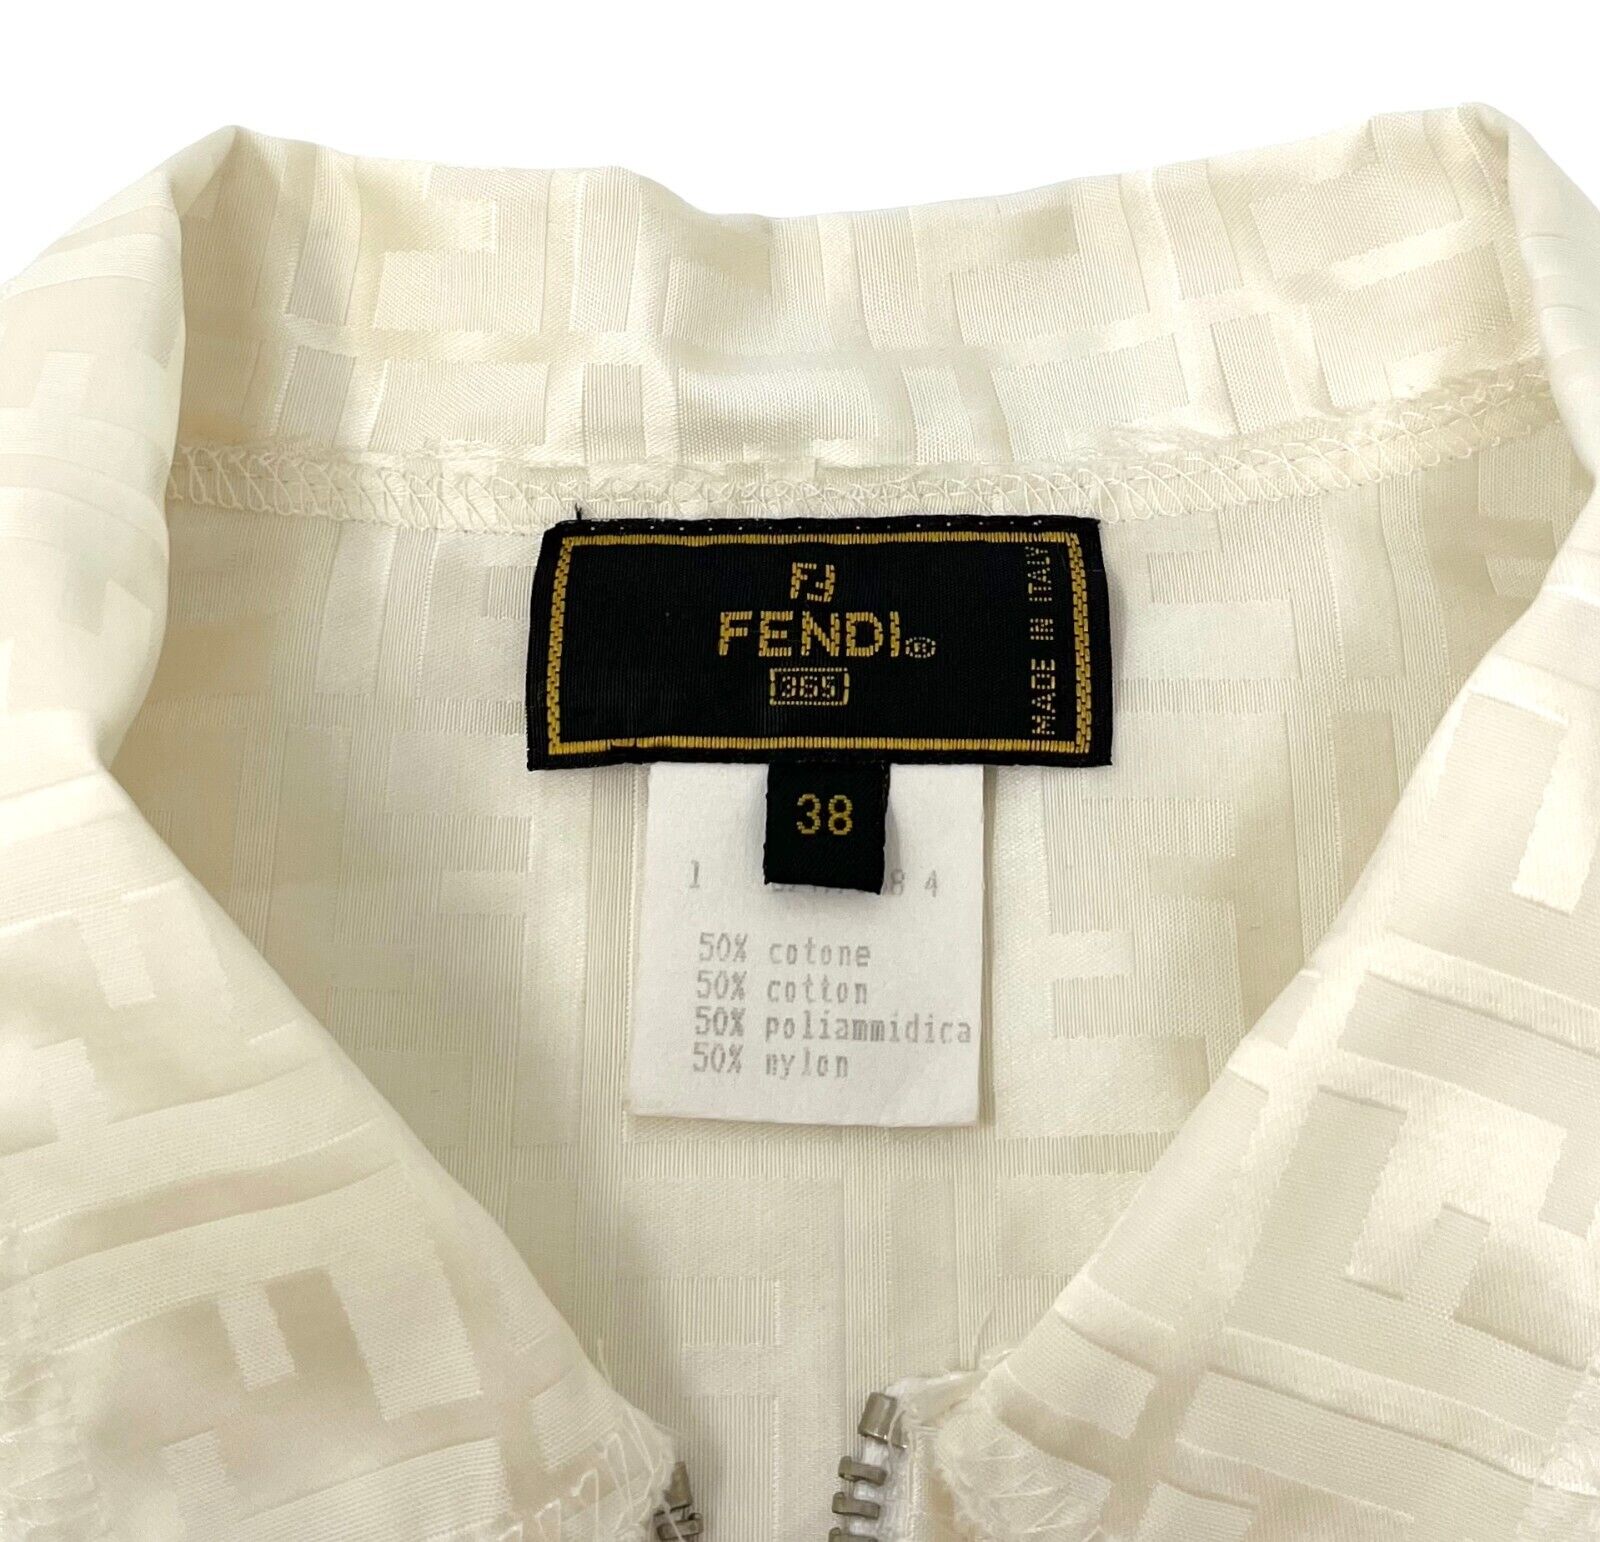 FENDI Vintage Zucca Monogram Logo Zipped Jacket #38 Short Sleeve Cream Rank AB